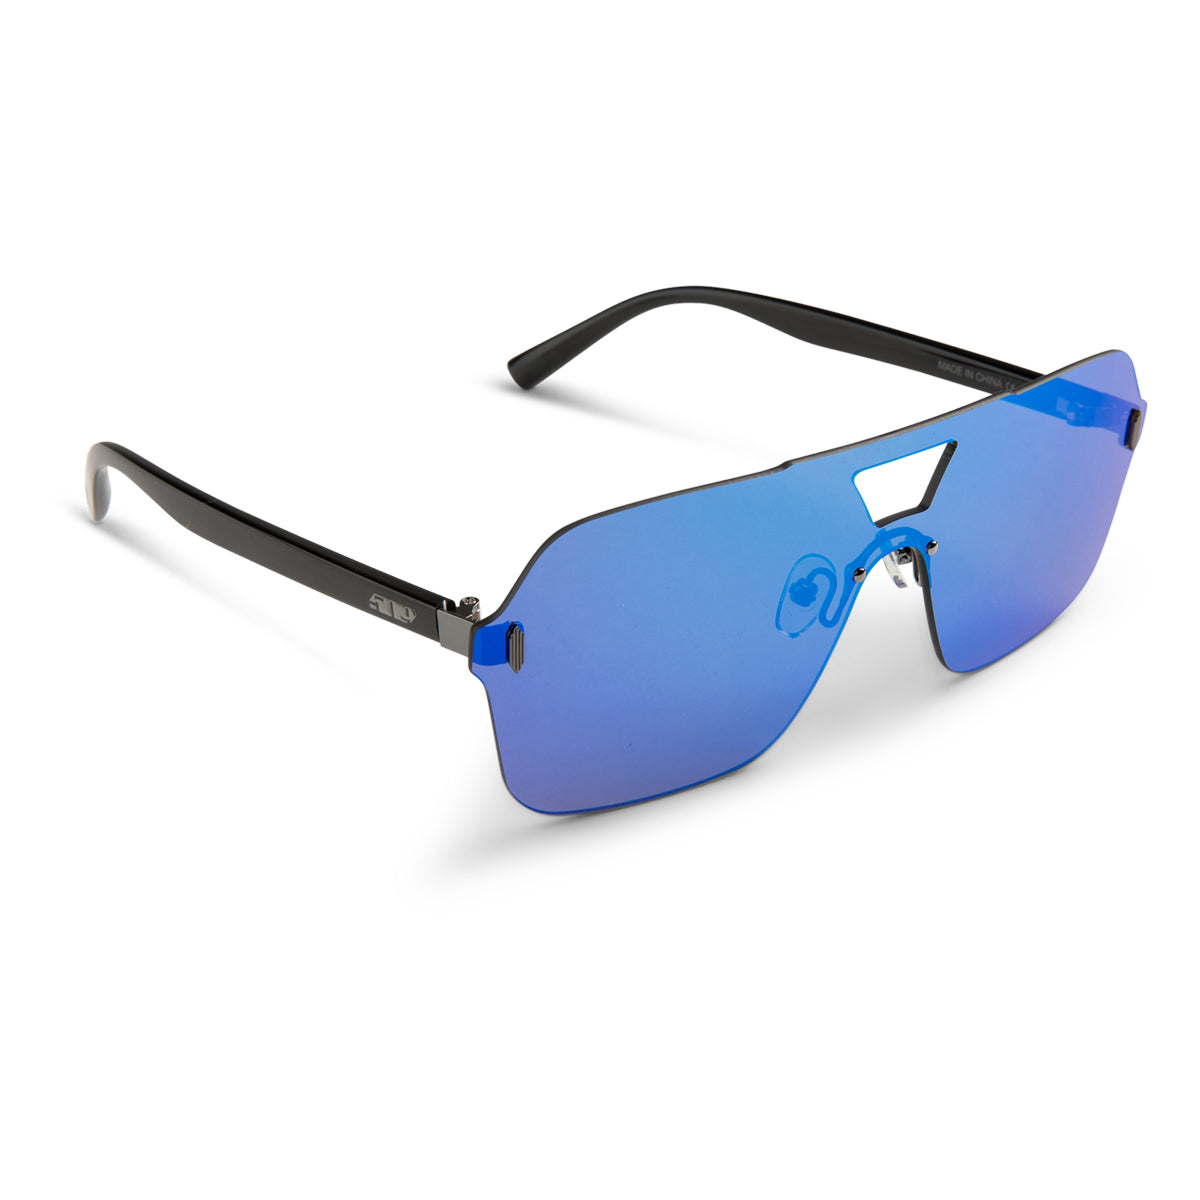 Horizon Sunglasses – 509